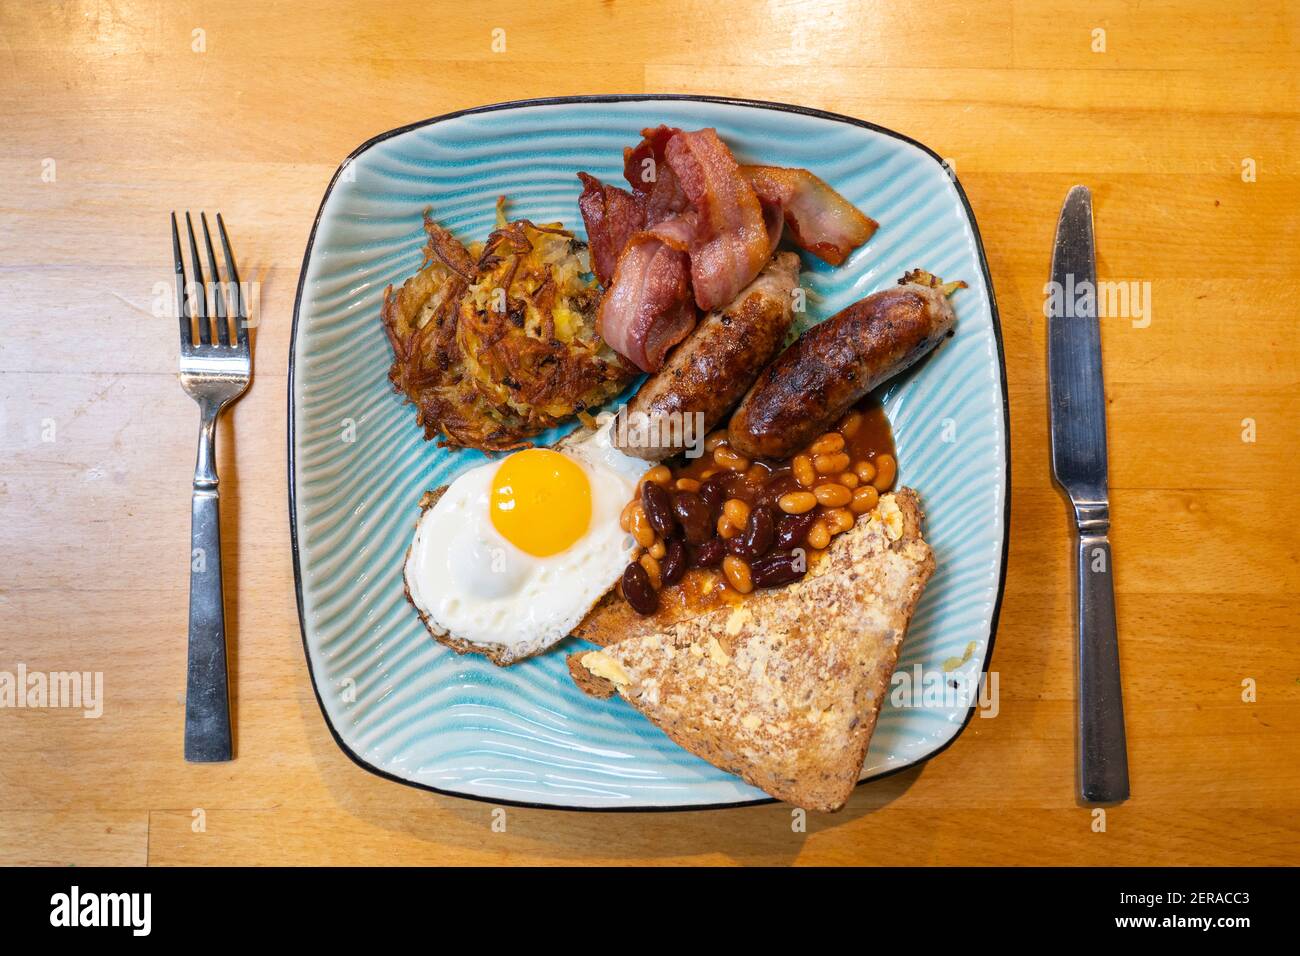 Un desayuno inglés tradicional servido en un plato azul con salchichas, un huevo frito, rashers de bacon, un hash brown, frijoles y rebanadas de pan tostado Foto de stock